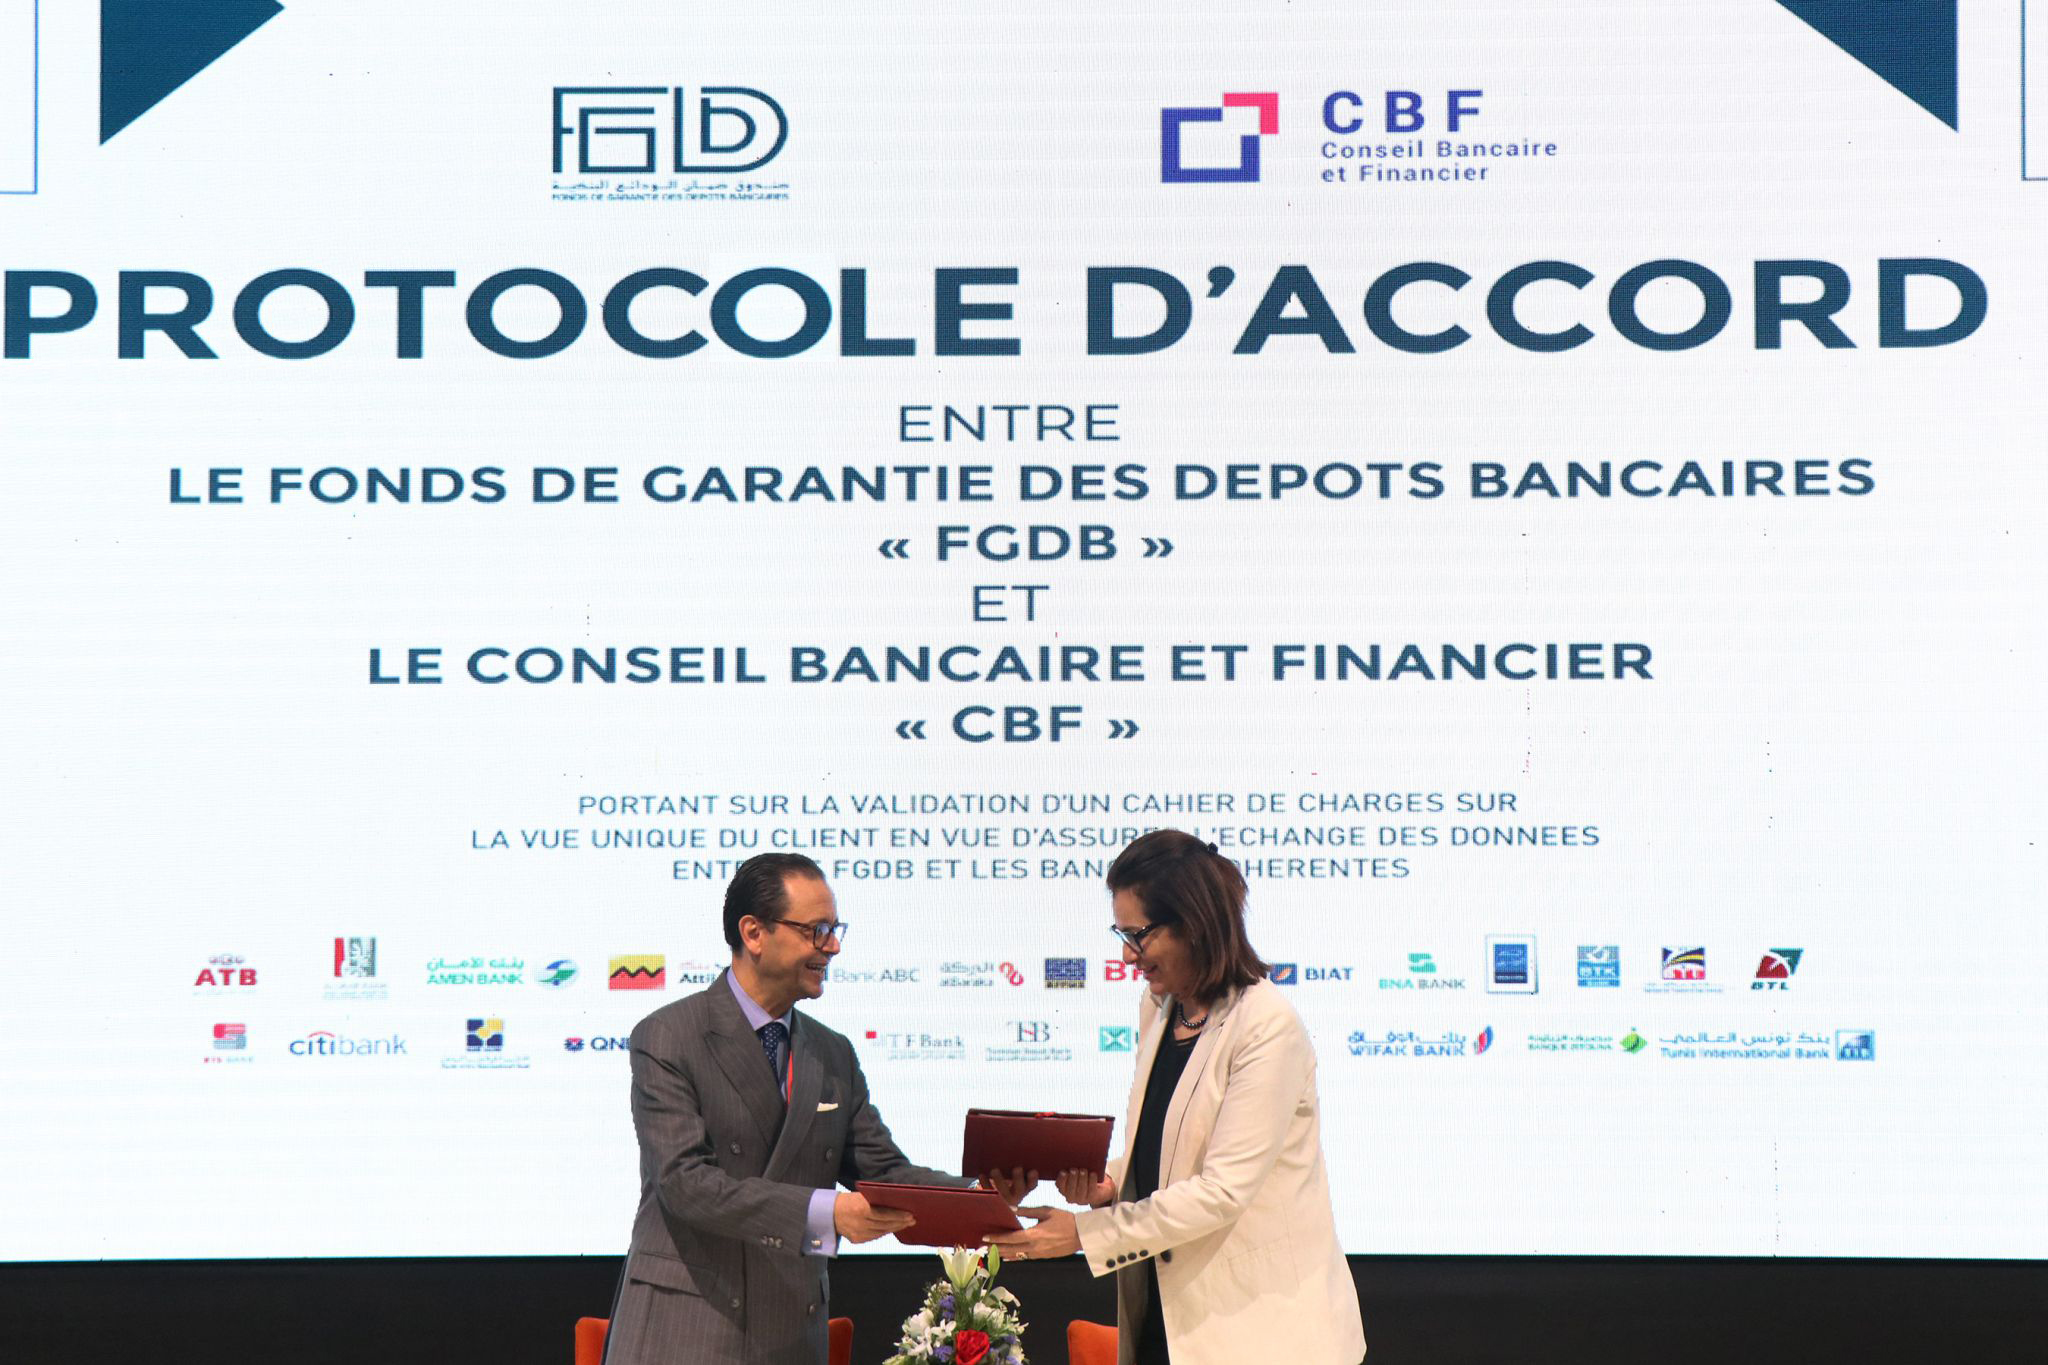 Signature d’un protocole d’accord entre le fonds de garantie des dépôts bancaires « FGDB » et le conseil bancaire et financier « CBF»